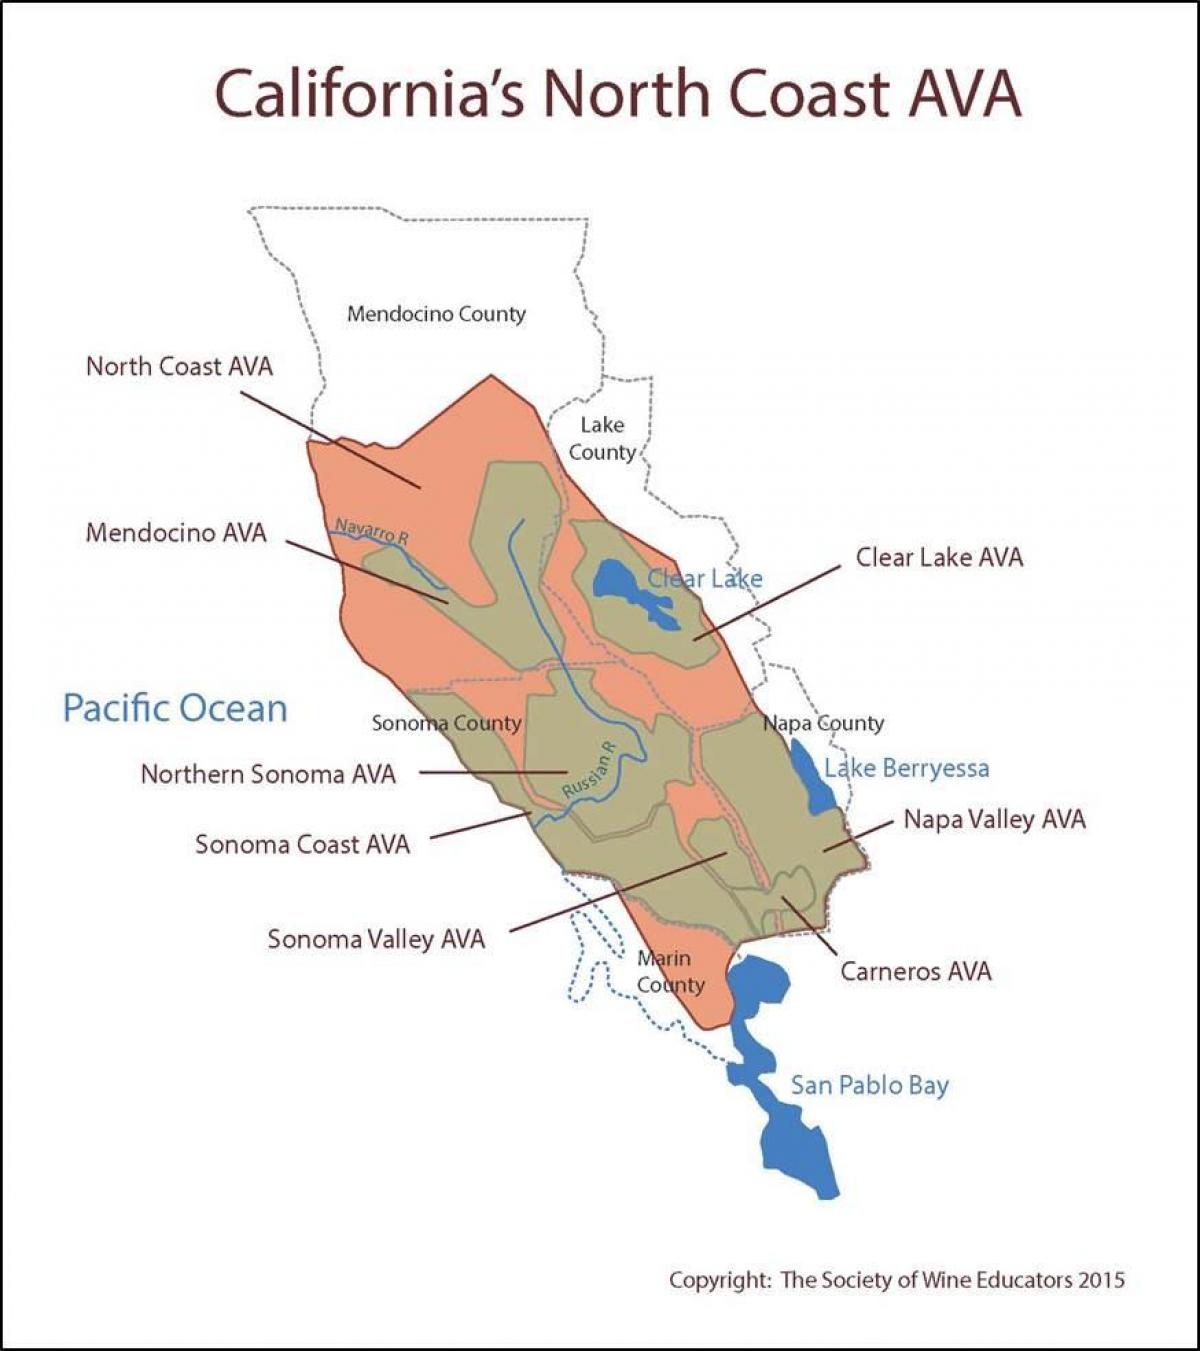 Карта калифорнији обале северно од Сан франциска